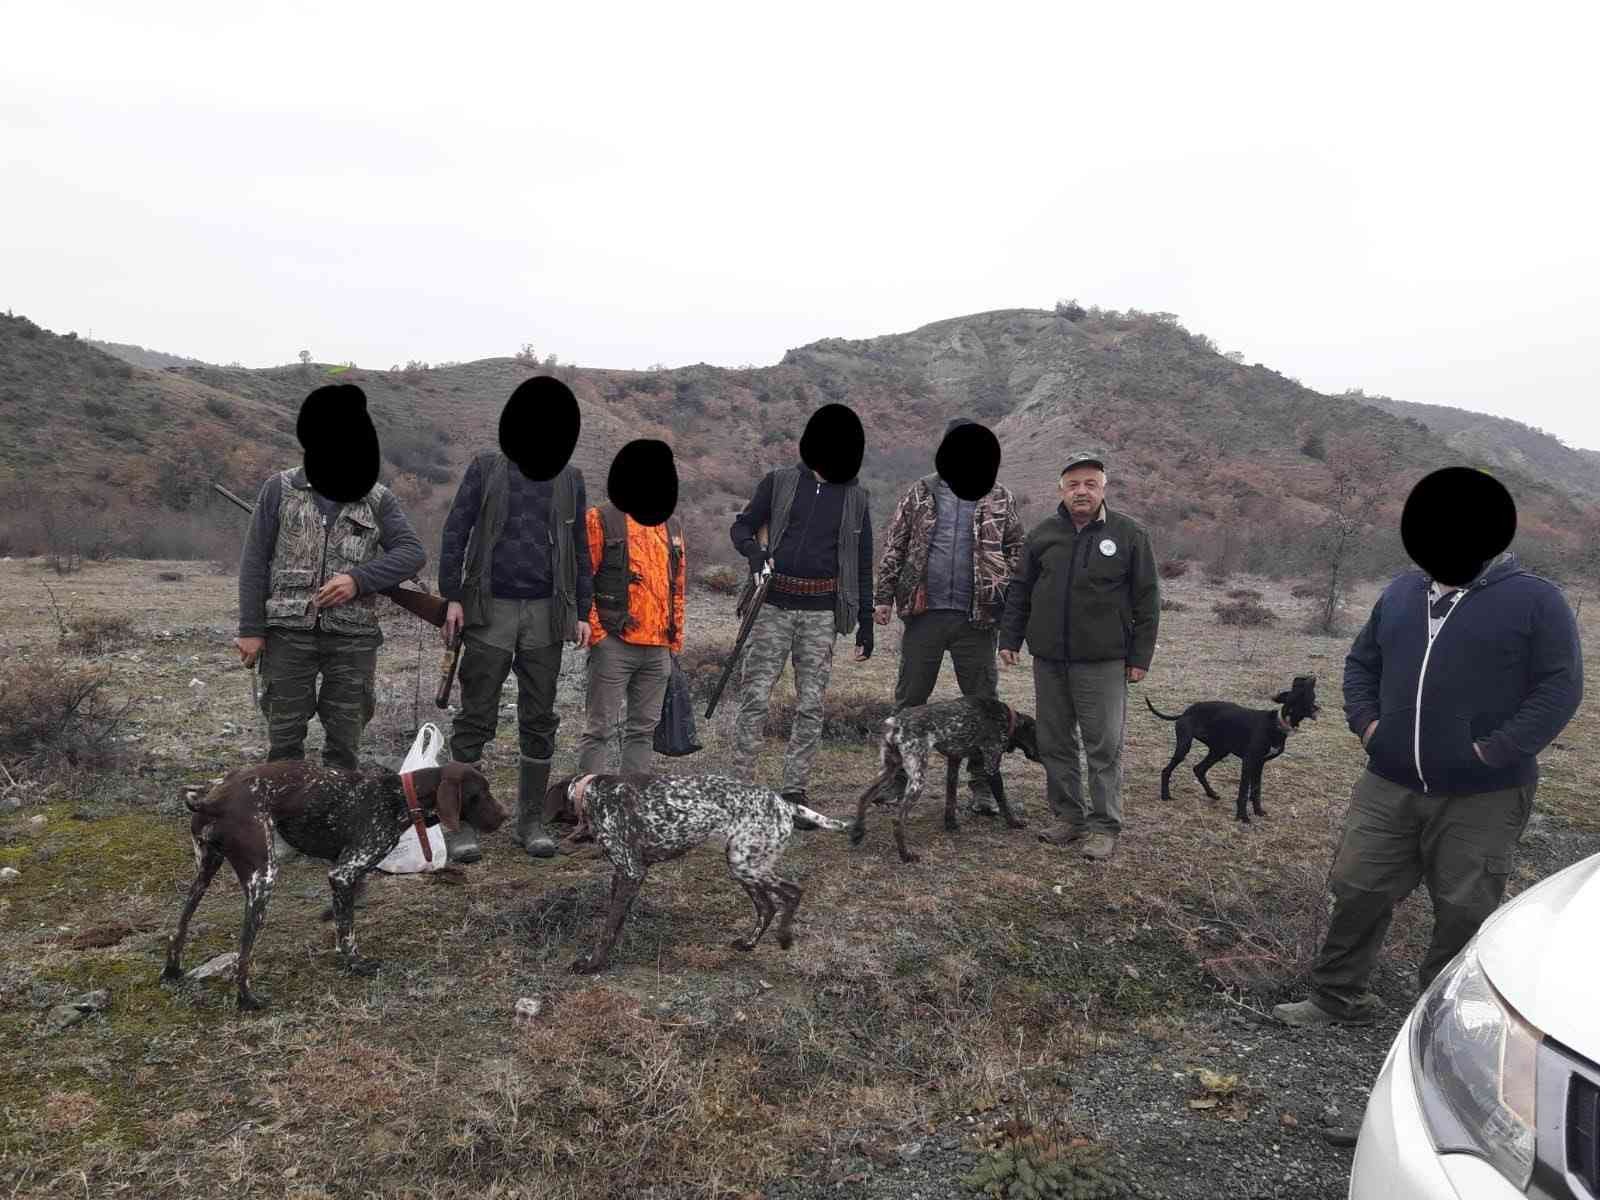 Kastamonu’da kaçak avcılara göz açtırılmıyor #kastamonu